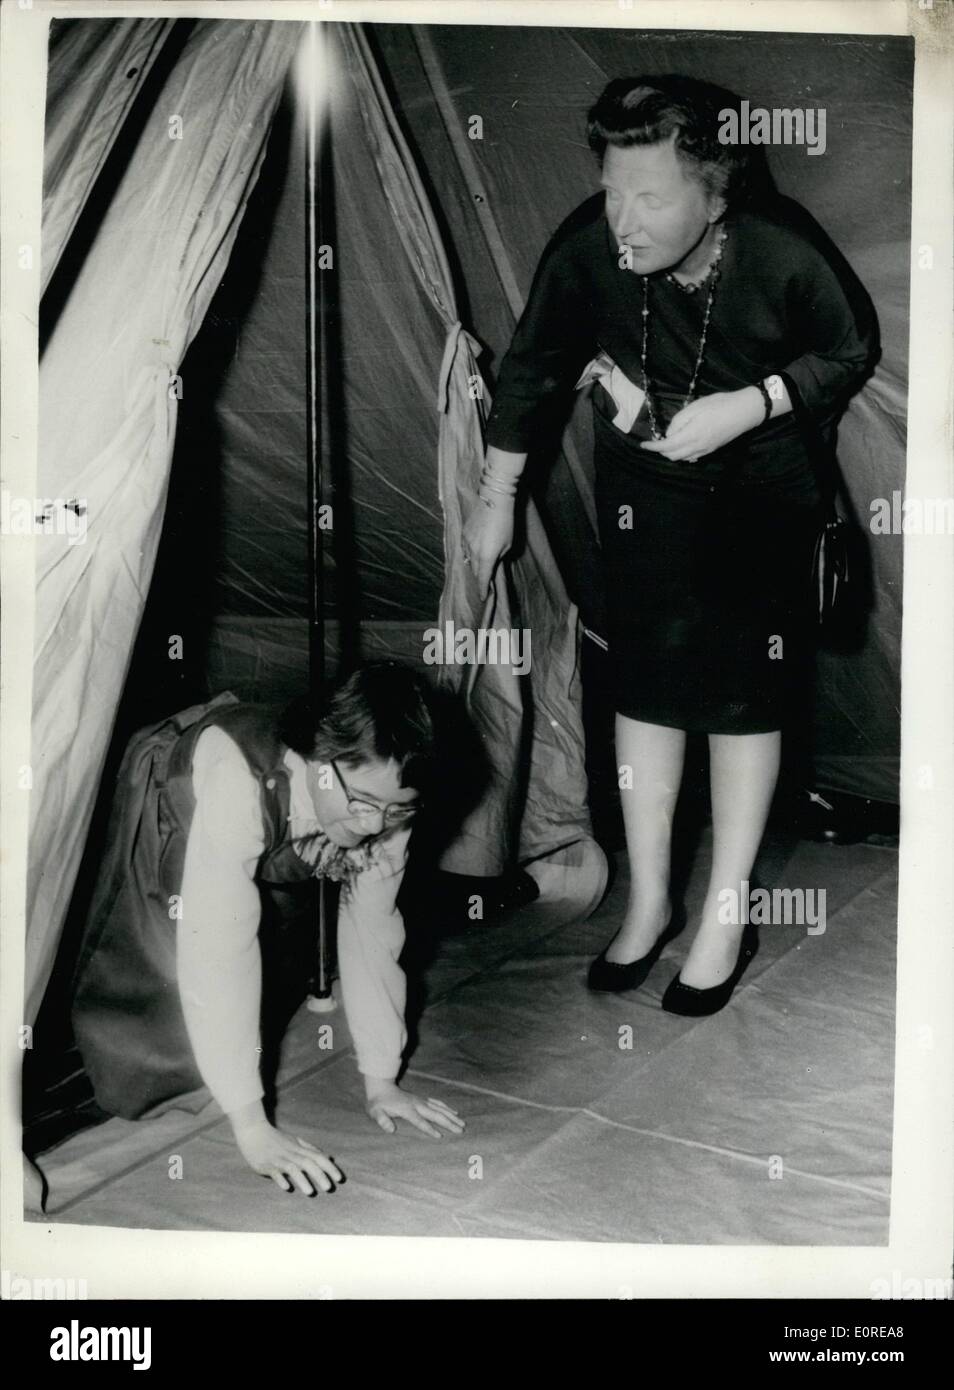 10 févr. 19, 1959 - 19.2.59 La Princesse Marijke inspecte sa tente don. 12e anniversaire - une députation du Troupes de communications de l'Armée royale néerlandaise, hier est allé au Palais de Soestdijk, de présenter une 12e anniversaire cadeau à la Princesse Marijke, qui était un double-toit tente. Photo : Keystone montre Princesse Marijke se traîne hors de la tente, qui était placé dans l'une des chambres du palais, après l'inspection de ce que sa mère la reine Juliana des Pays-Bas. Banque D'Images